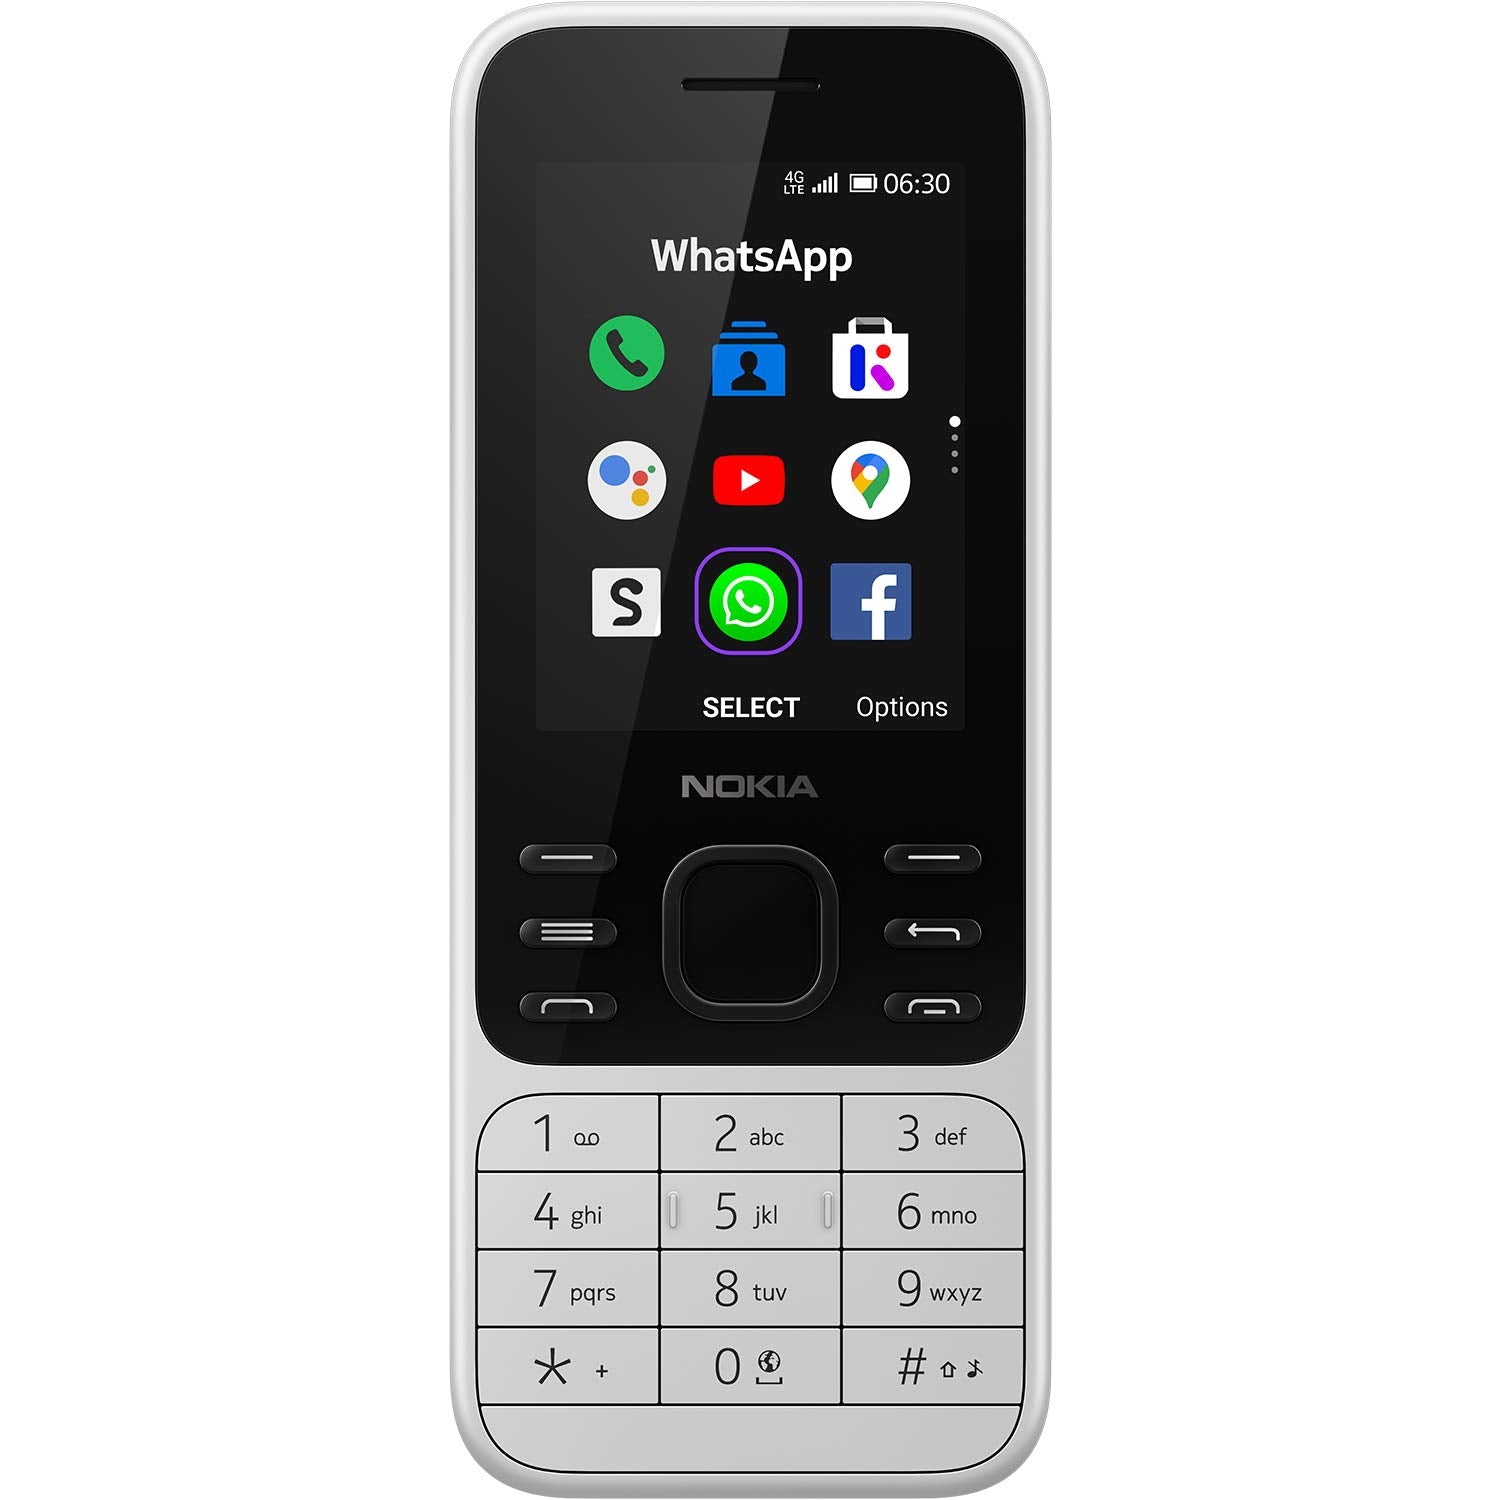 Nokia 6300 4G - New fonezworldarklow